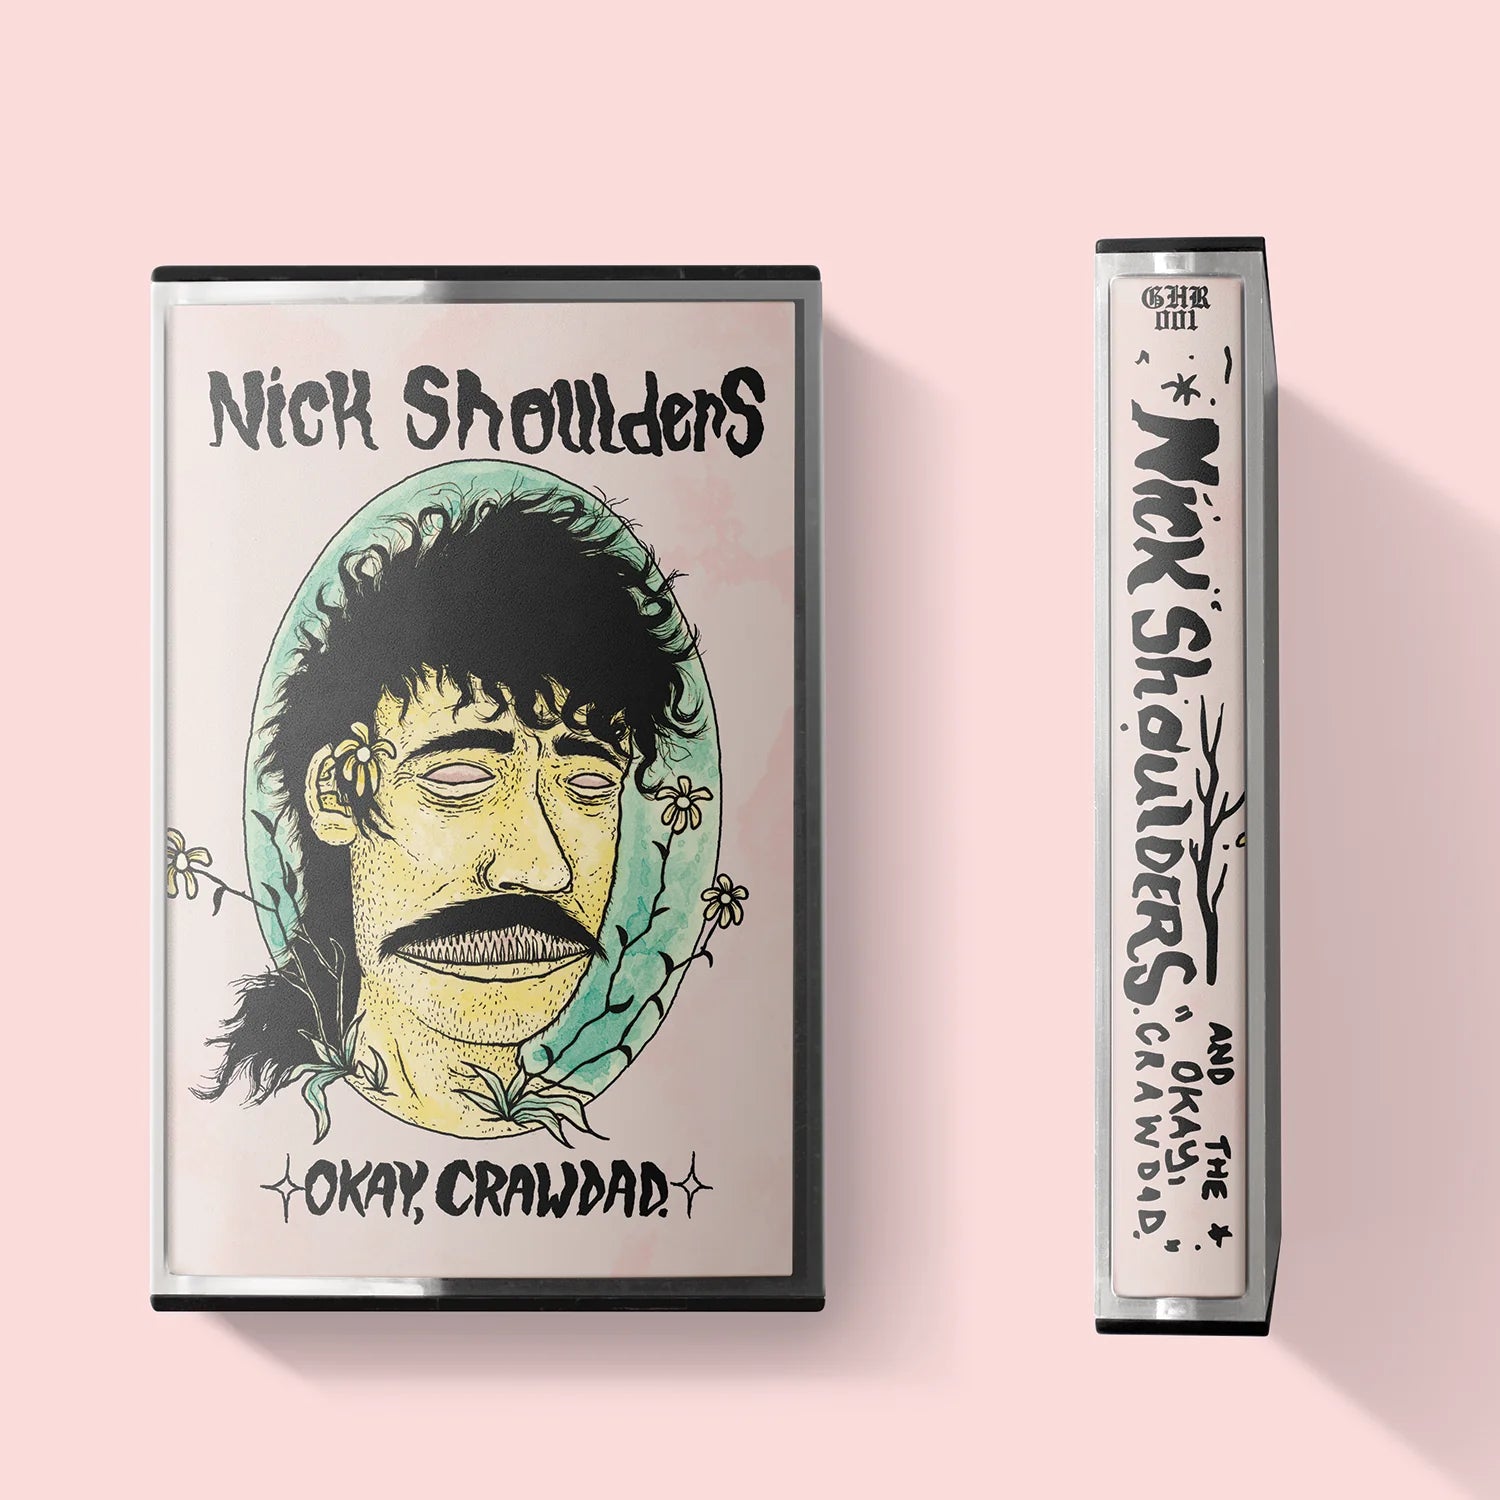 Nick Shoulders - "Okay, Crawdad." Cassette